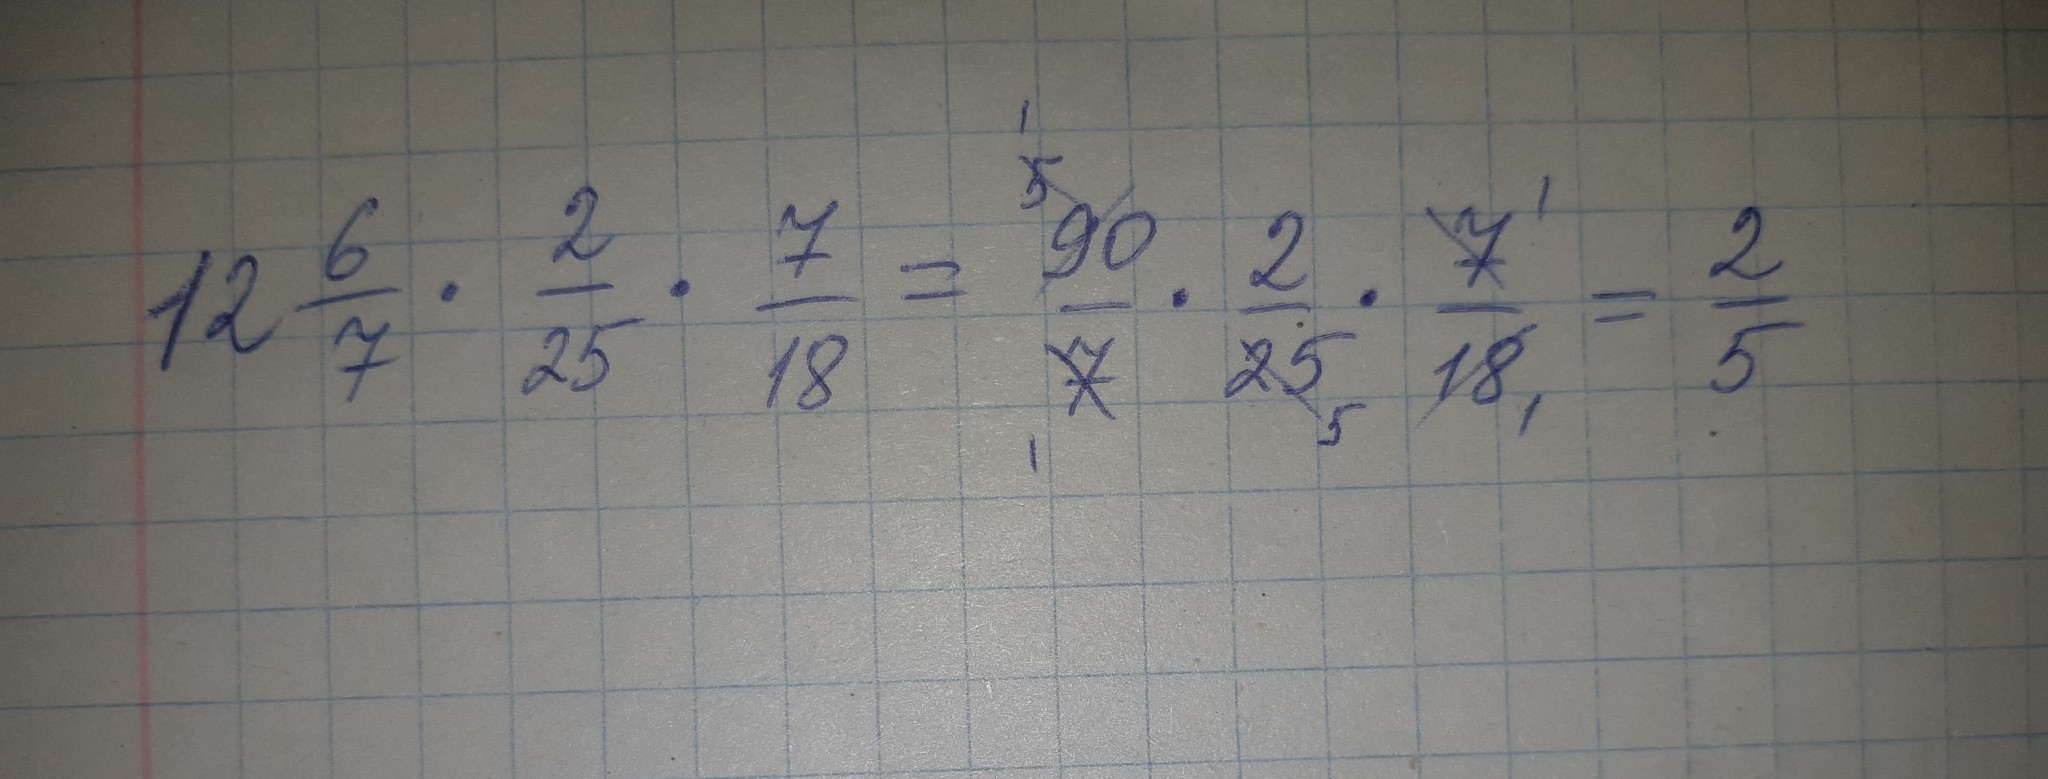 Минус 6 умножить на 7 20. 1/2 - 1/3 Внизу 5/6. Двенадцать восемнадцатых равно. Вычисли 3/2 - 11 черточка 2/5. 25 Умножить на 7.